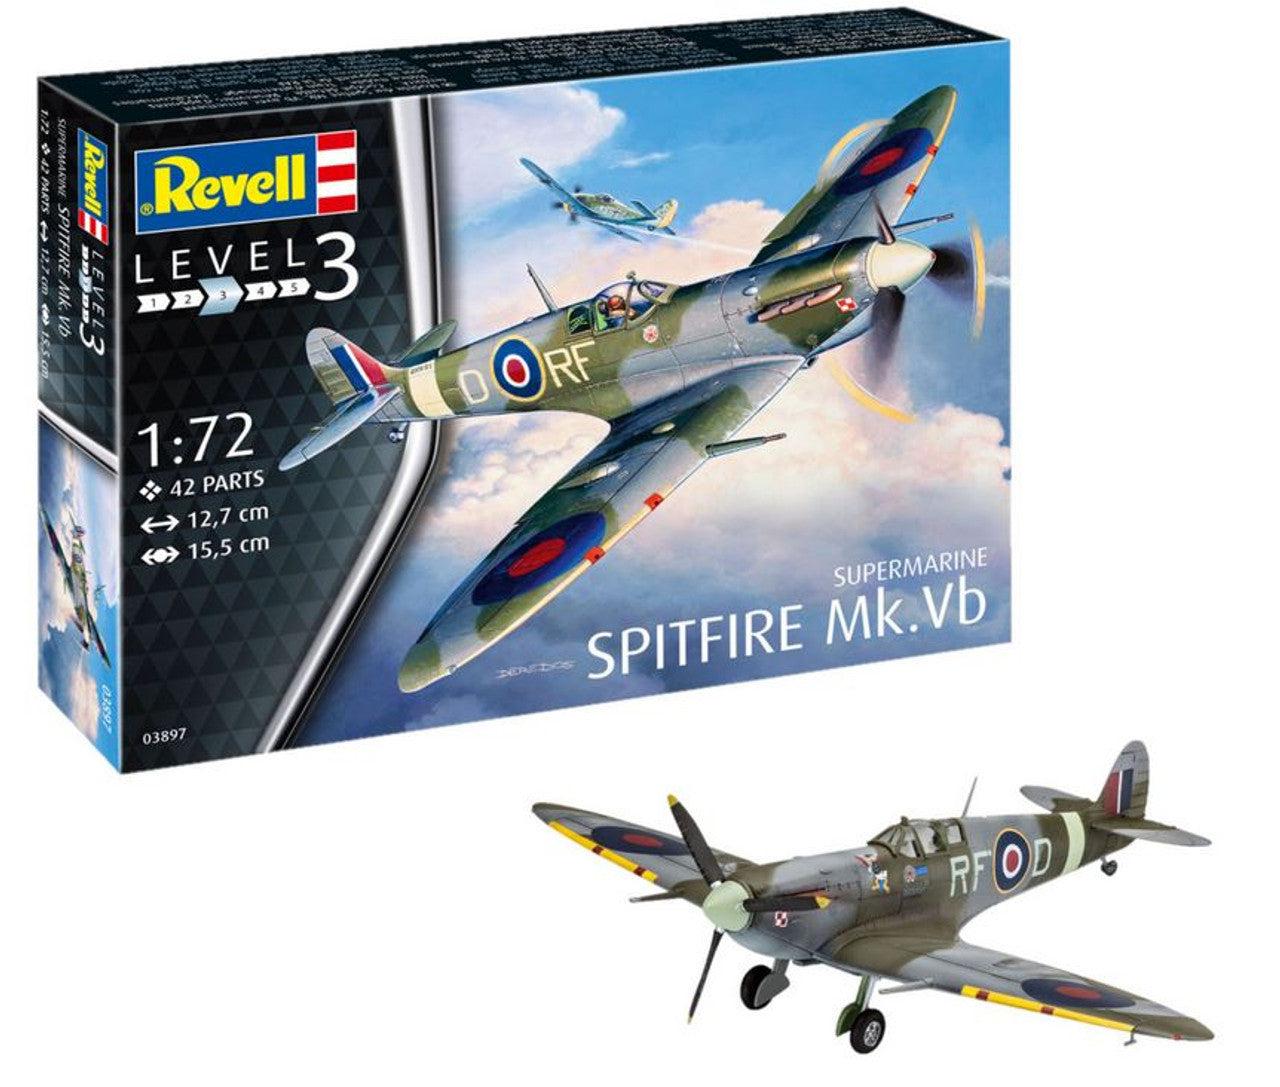 Supermarine Spitfire Mk.Vb (1:72) - Loaded Dice